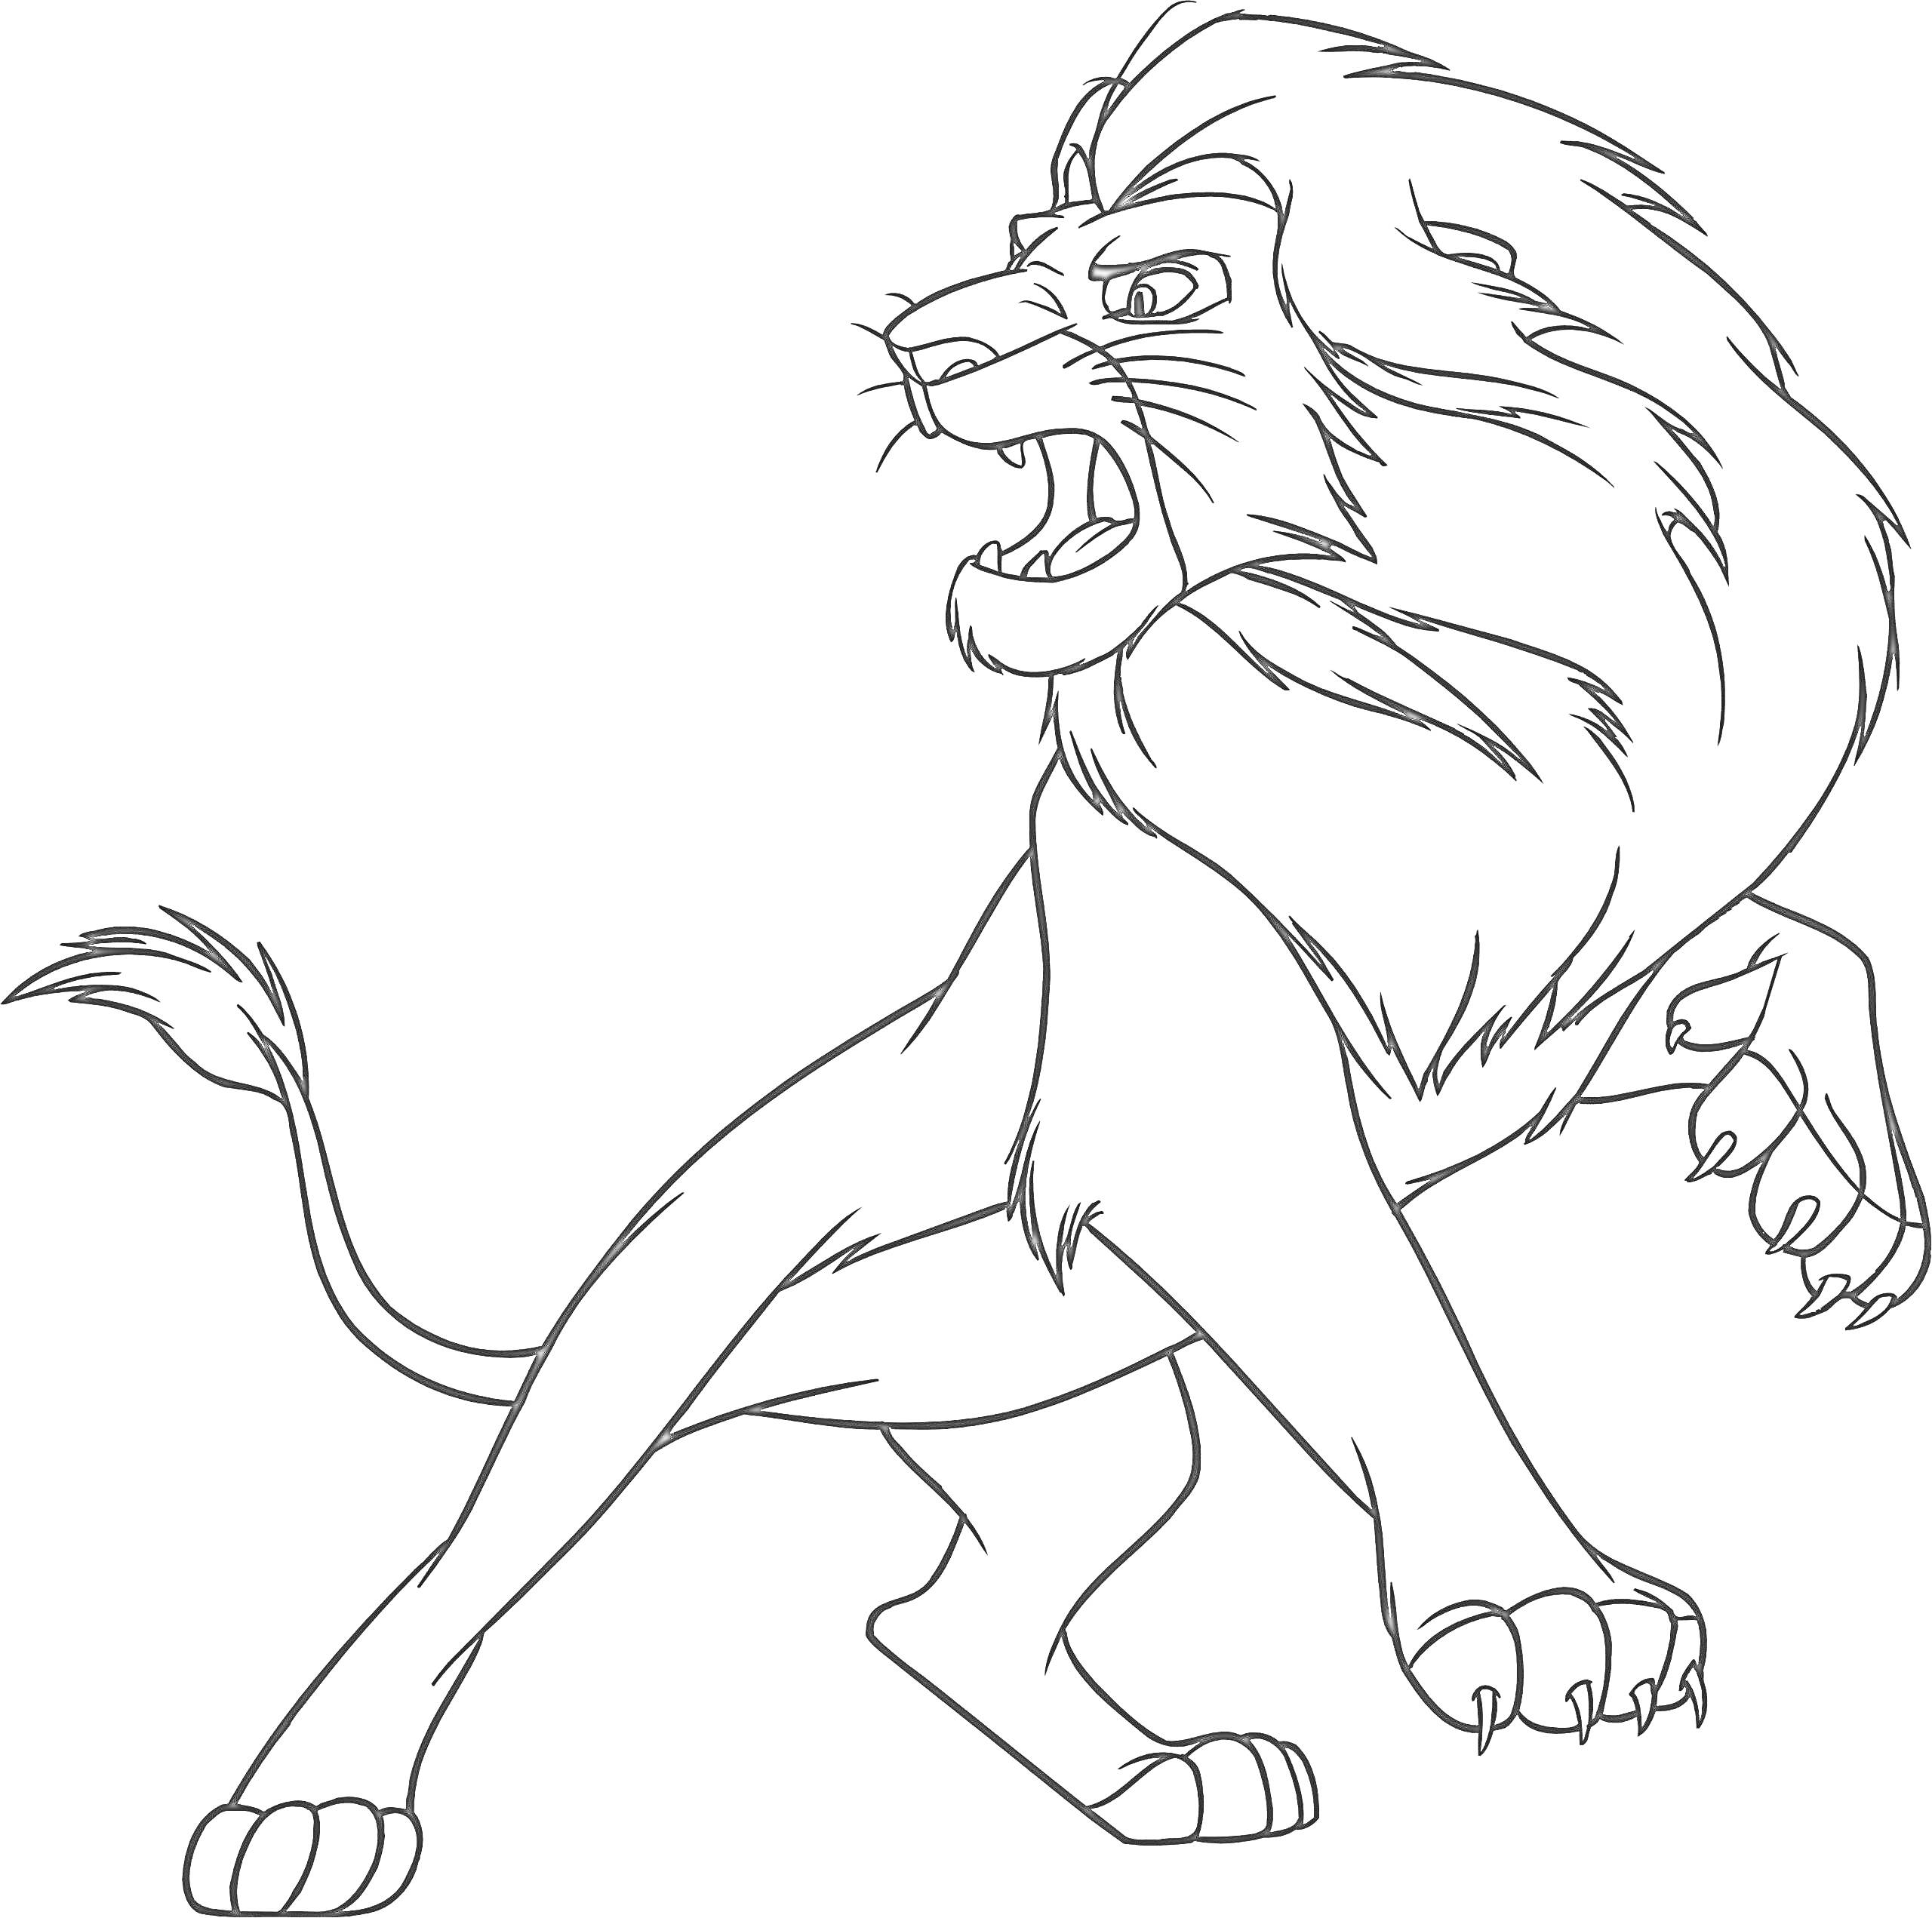 Лев в боевой позе со вздыбленной гривой и поднятой передней лапой